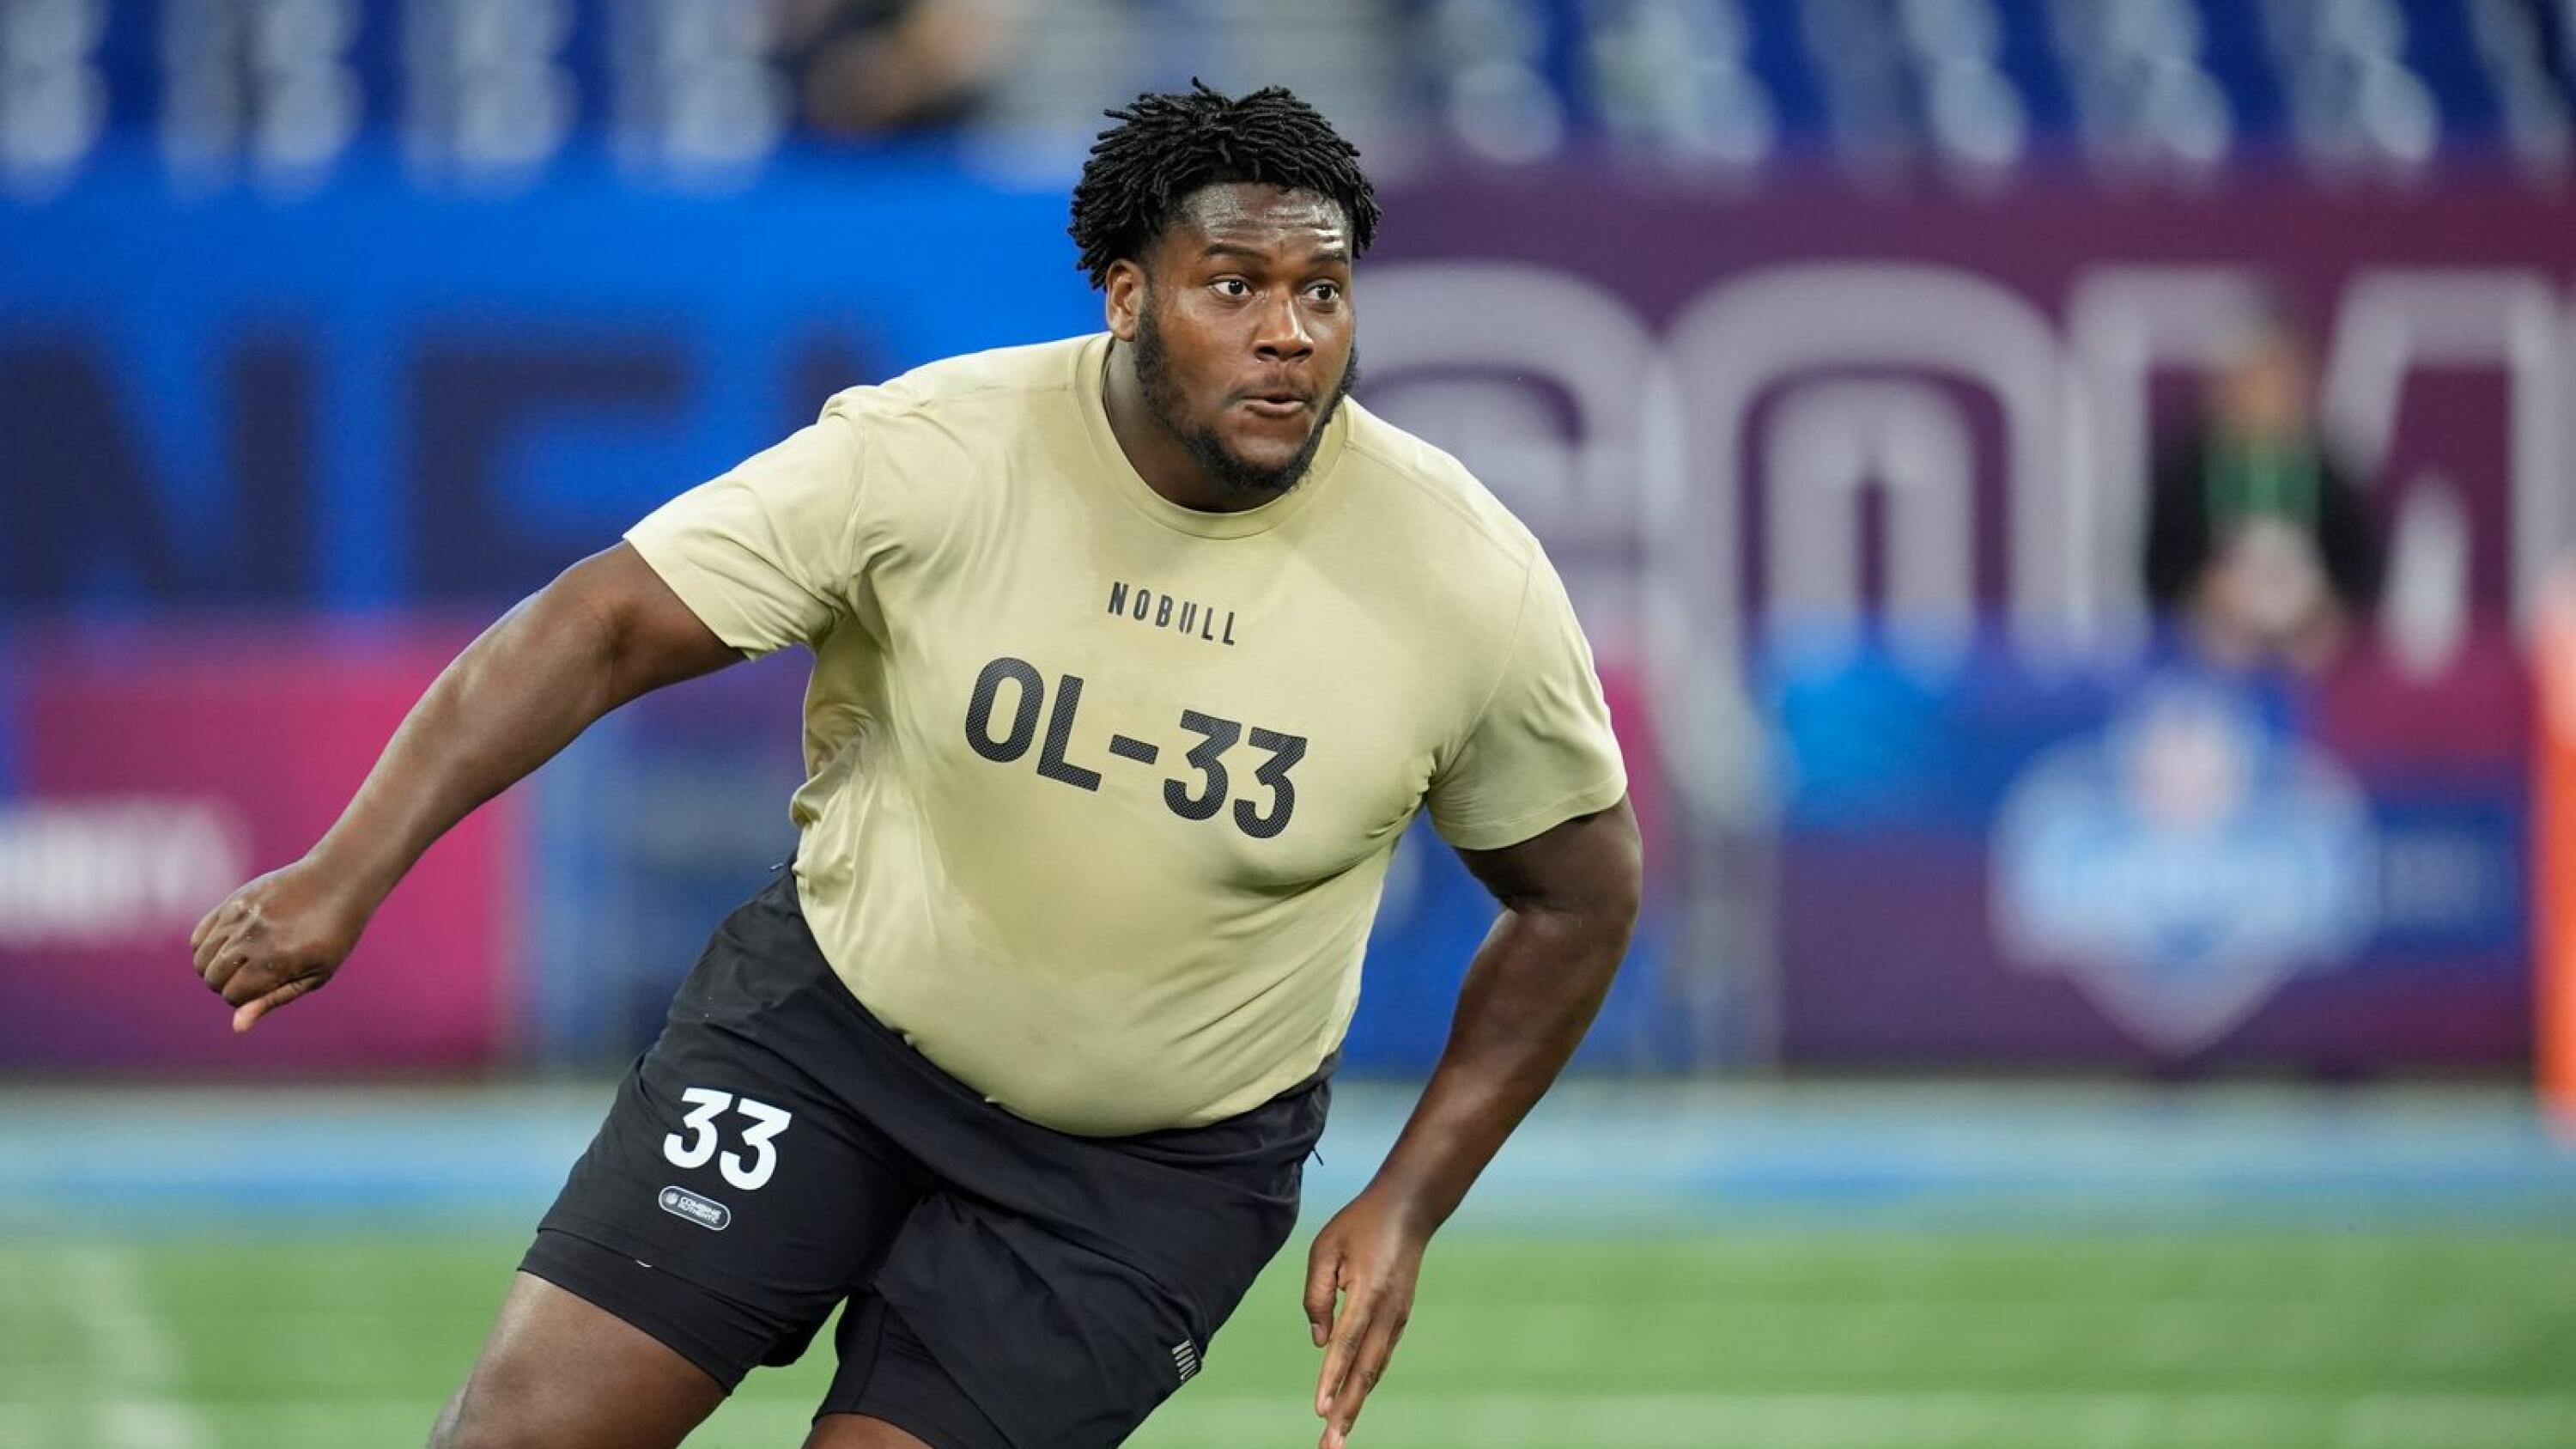 UConn’s Haynes, Yale’s Amegadjie selected in NFL draft